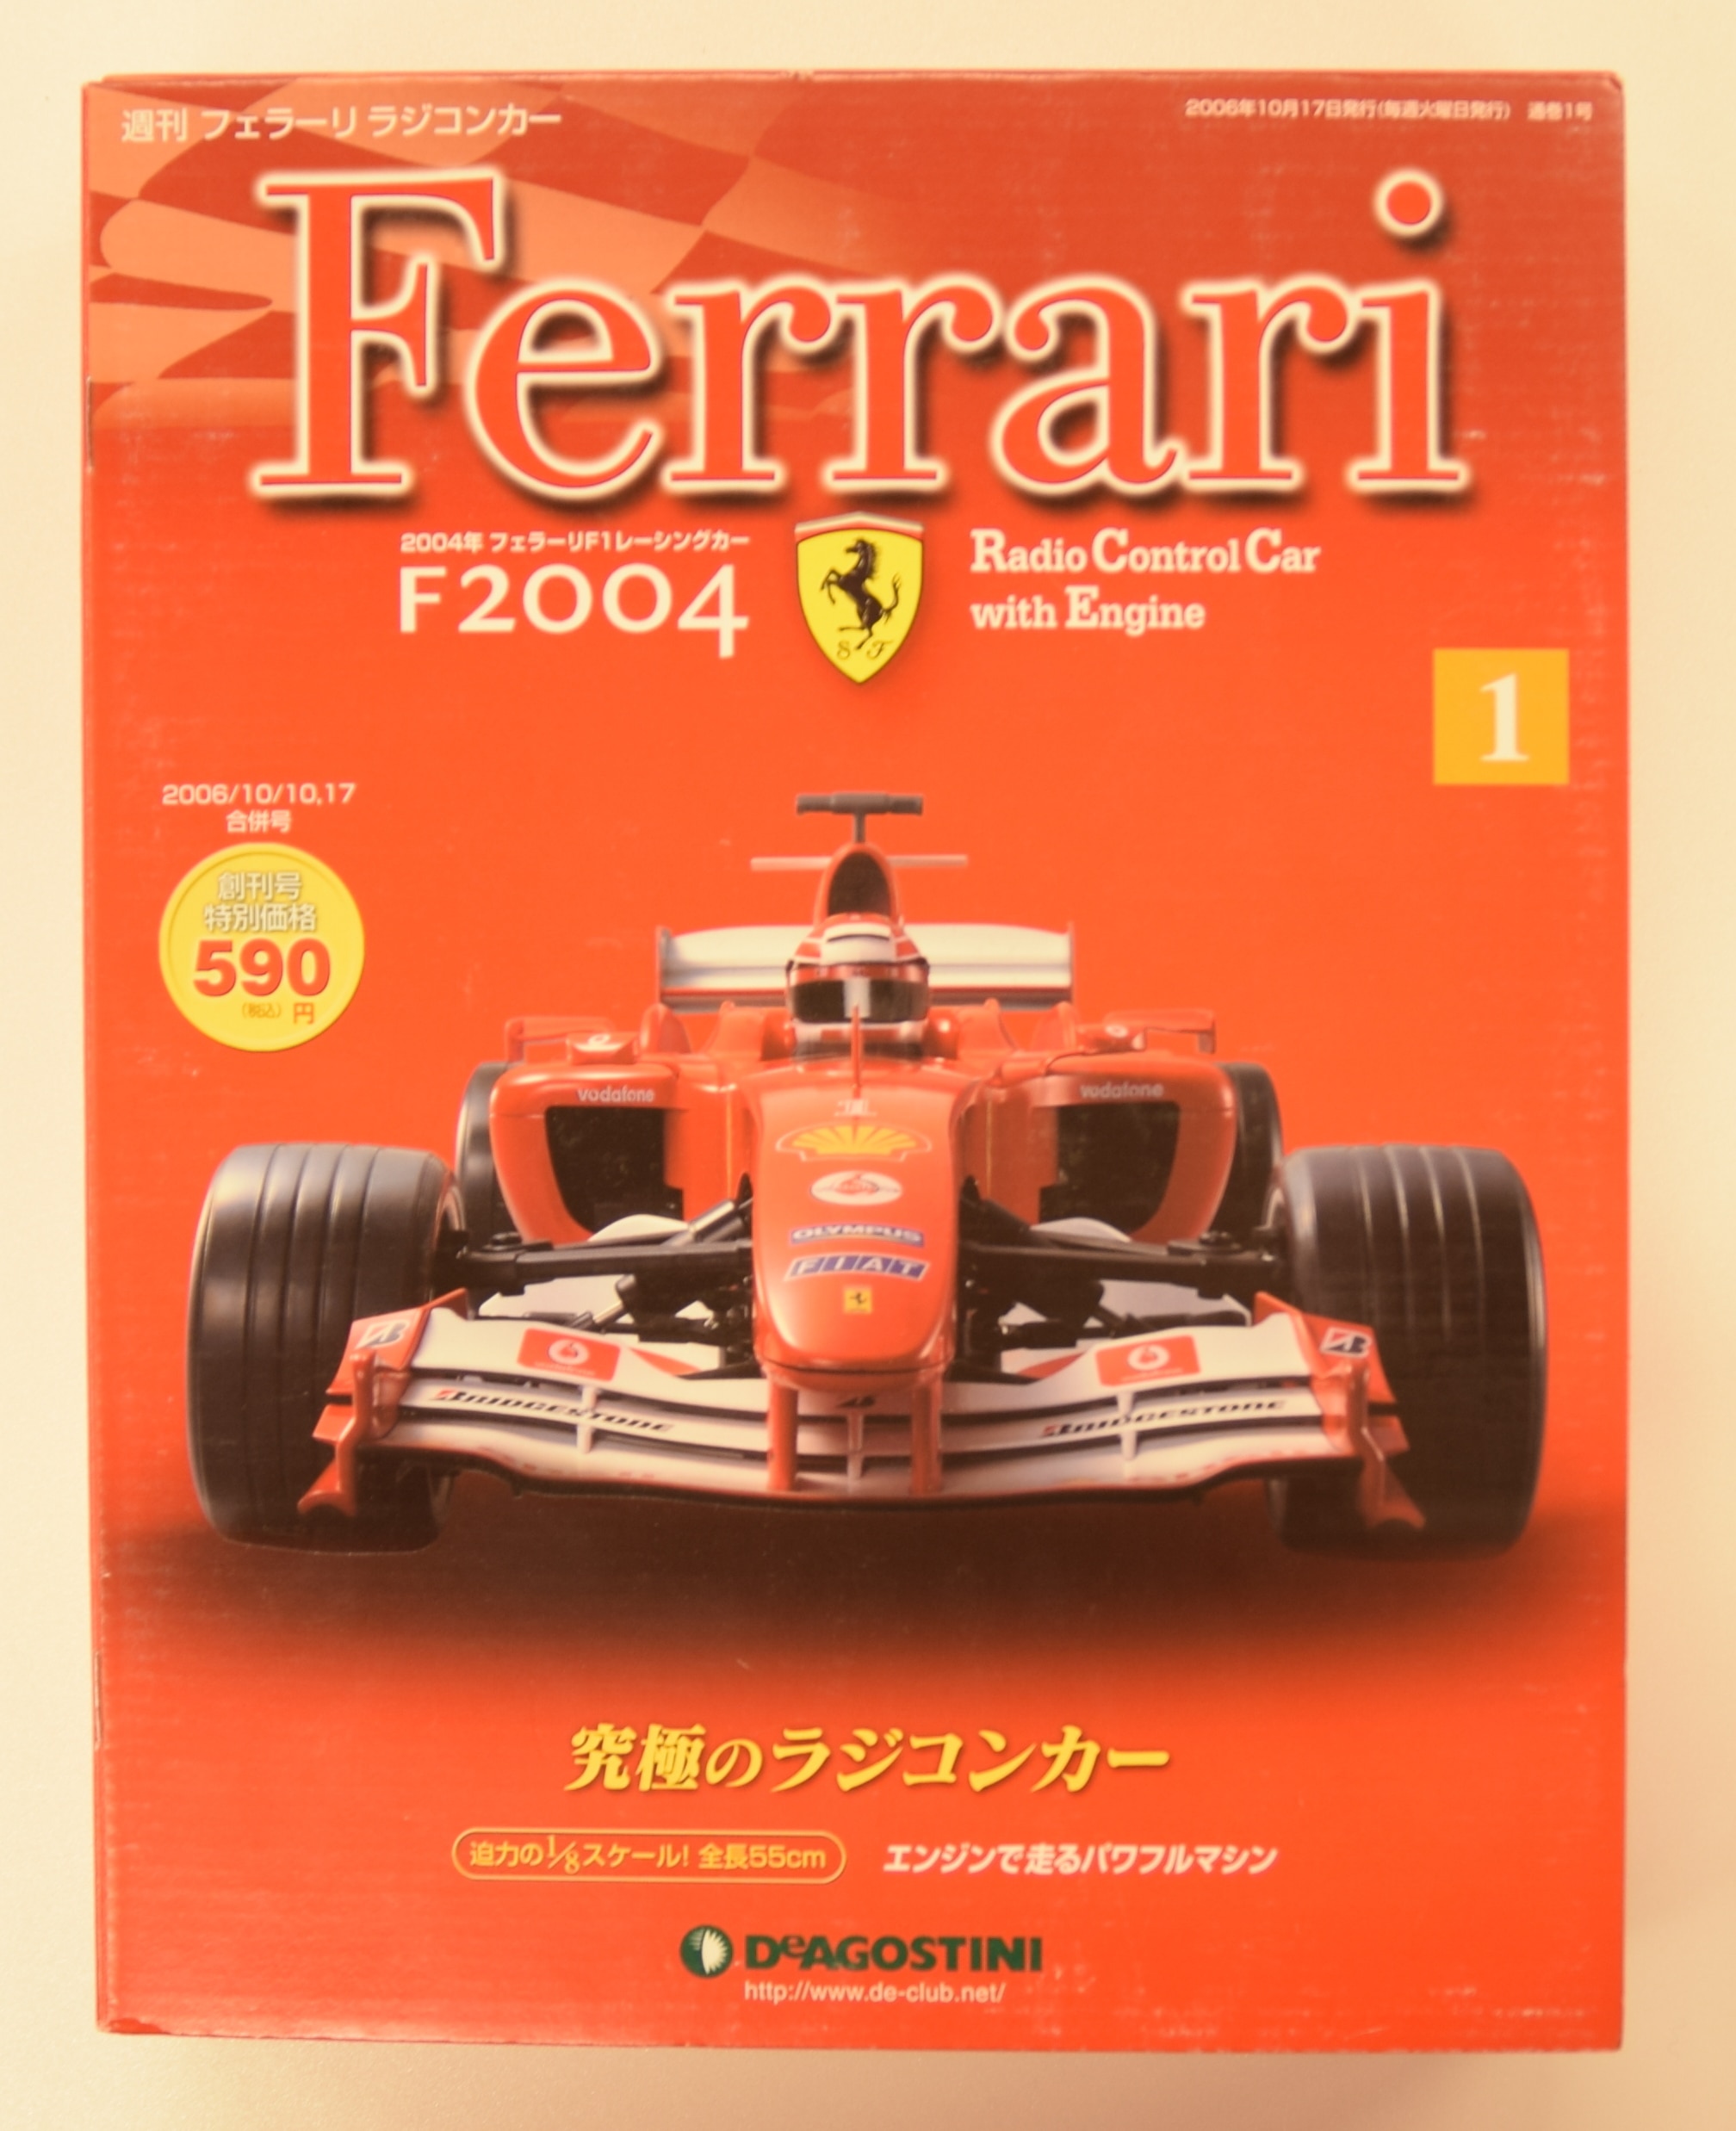 デアゴスティーニ 週刊フェラーリラジコンカー Ｆ2004 全100巻セット